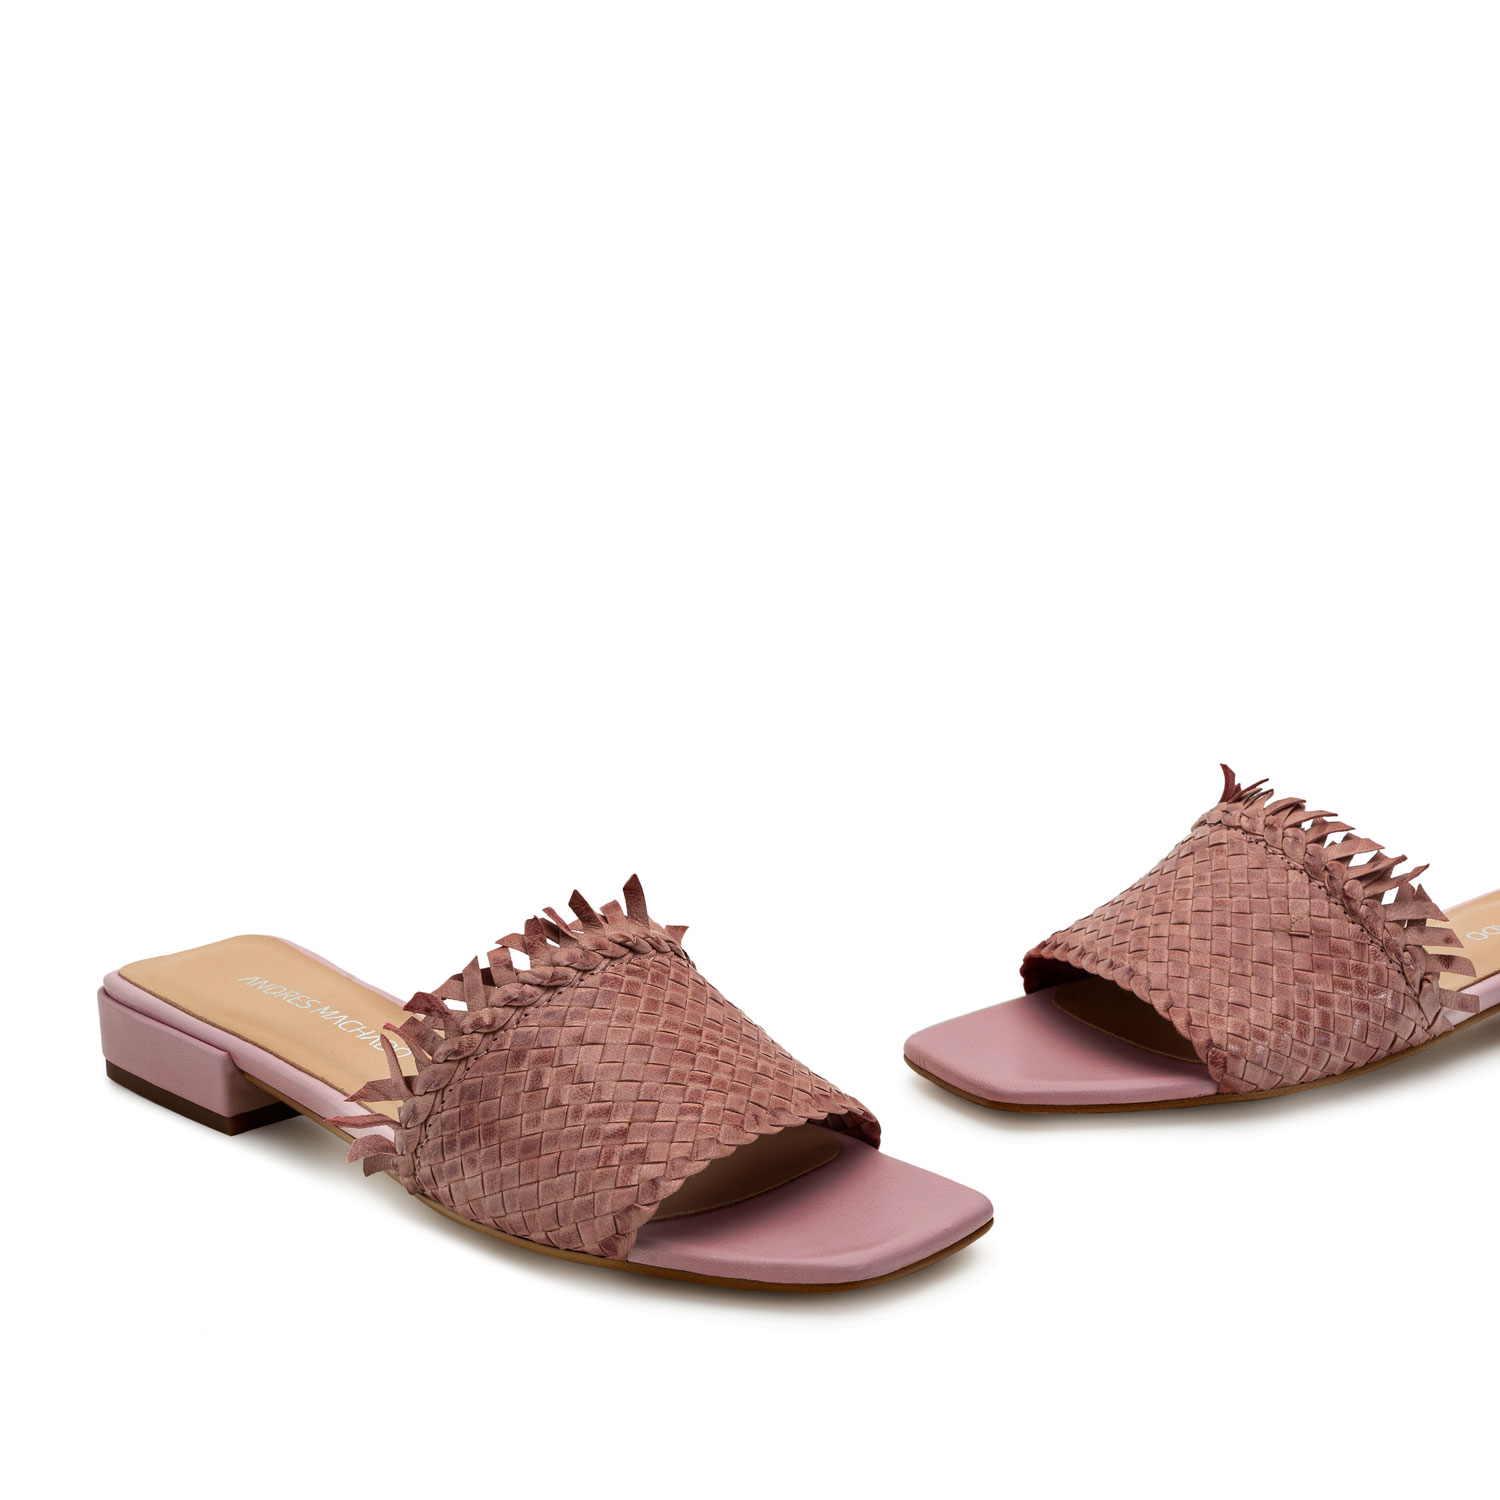 Sandalen aus rosanem Leder - MADE IN SPAIN - 